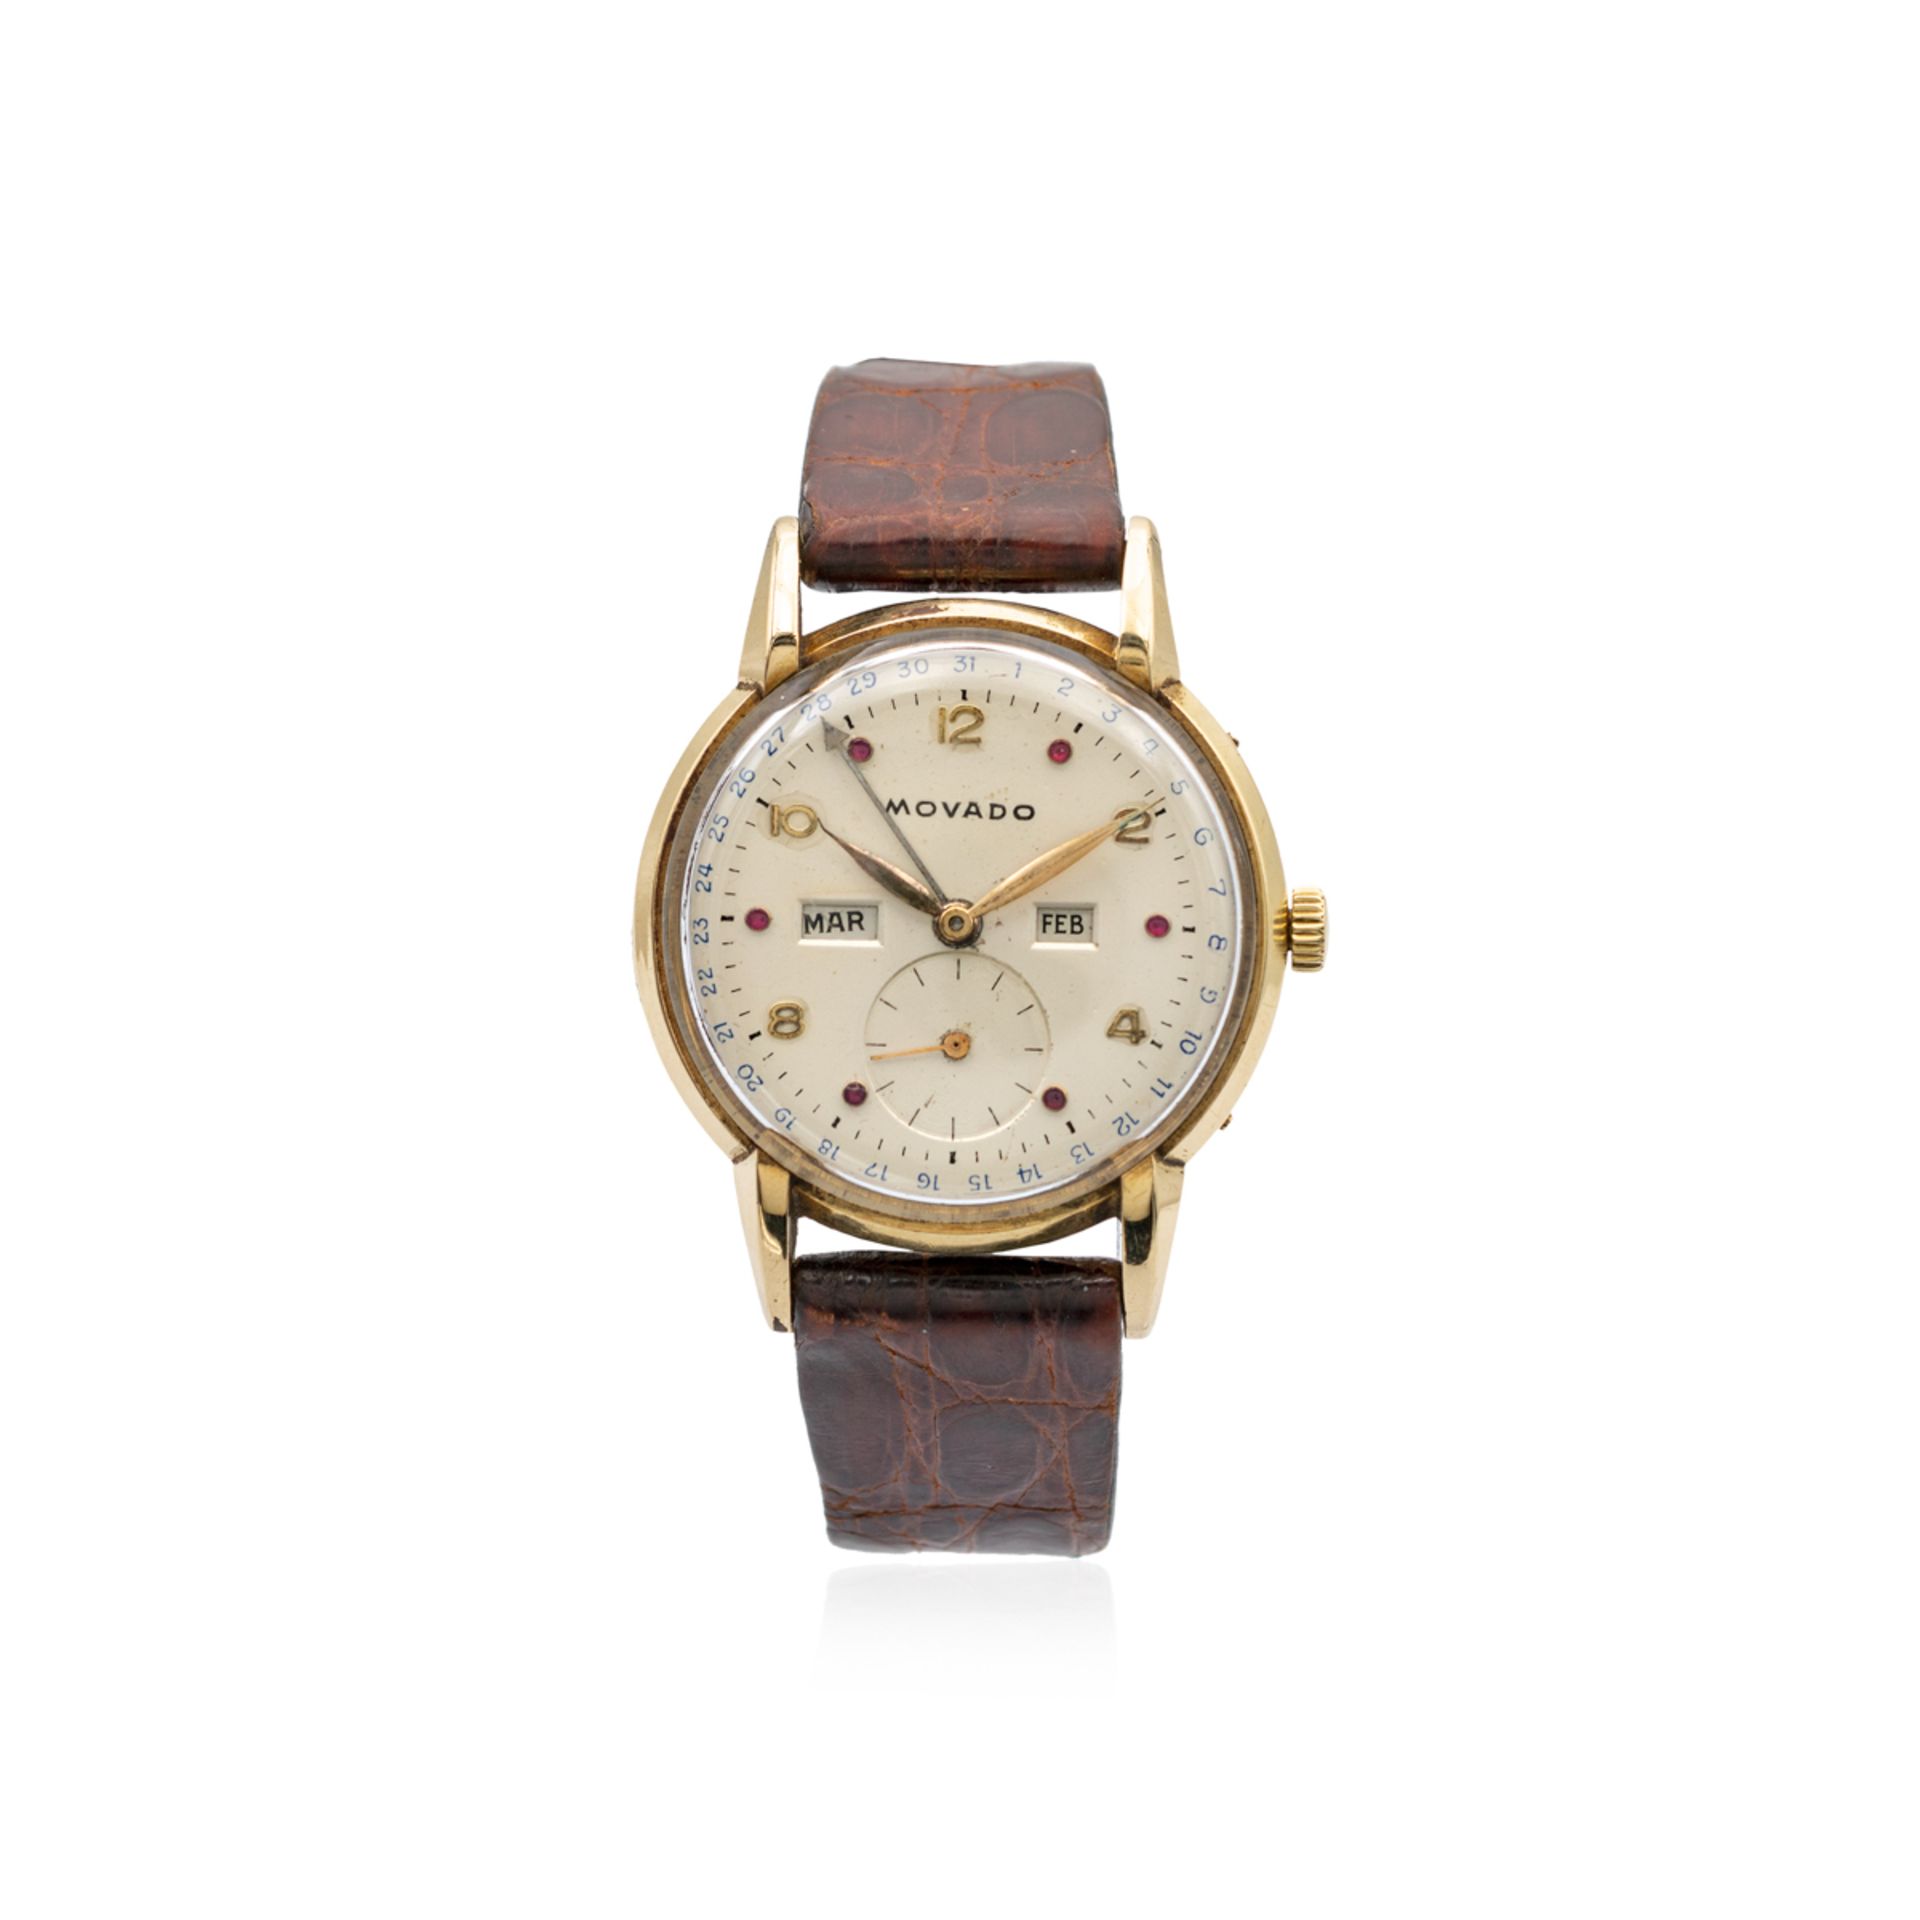 Movado Triple Date, vintage wristwatch